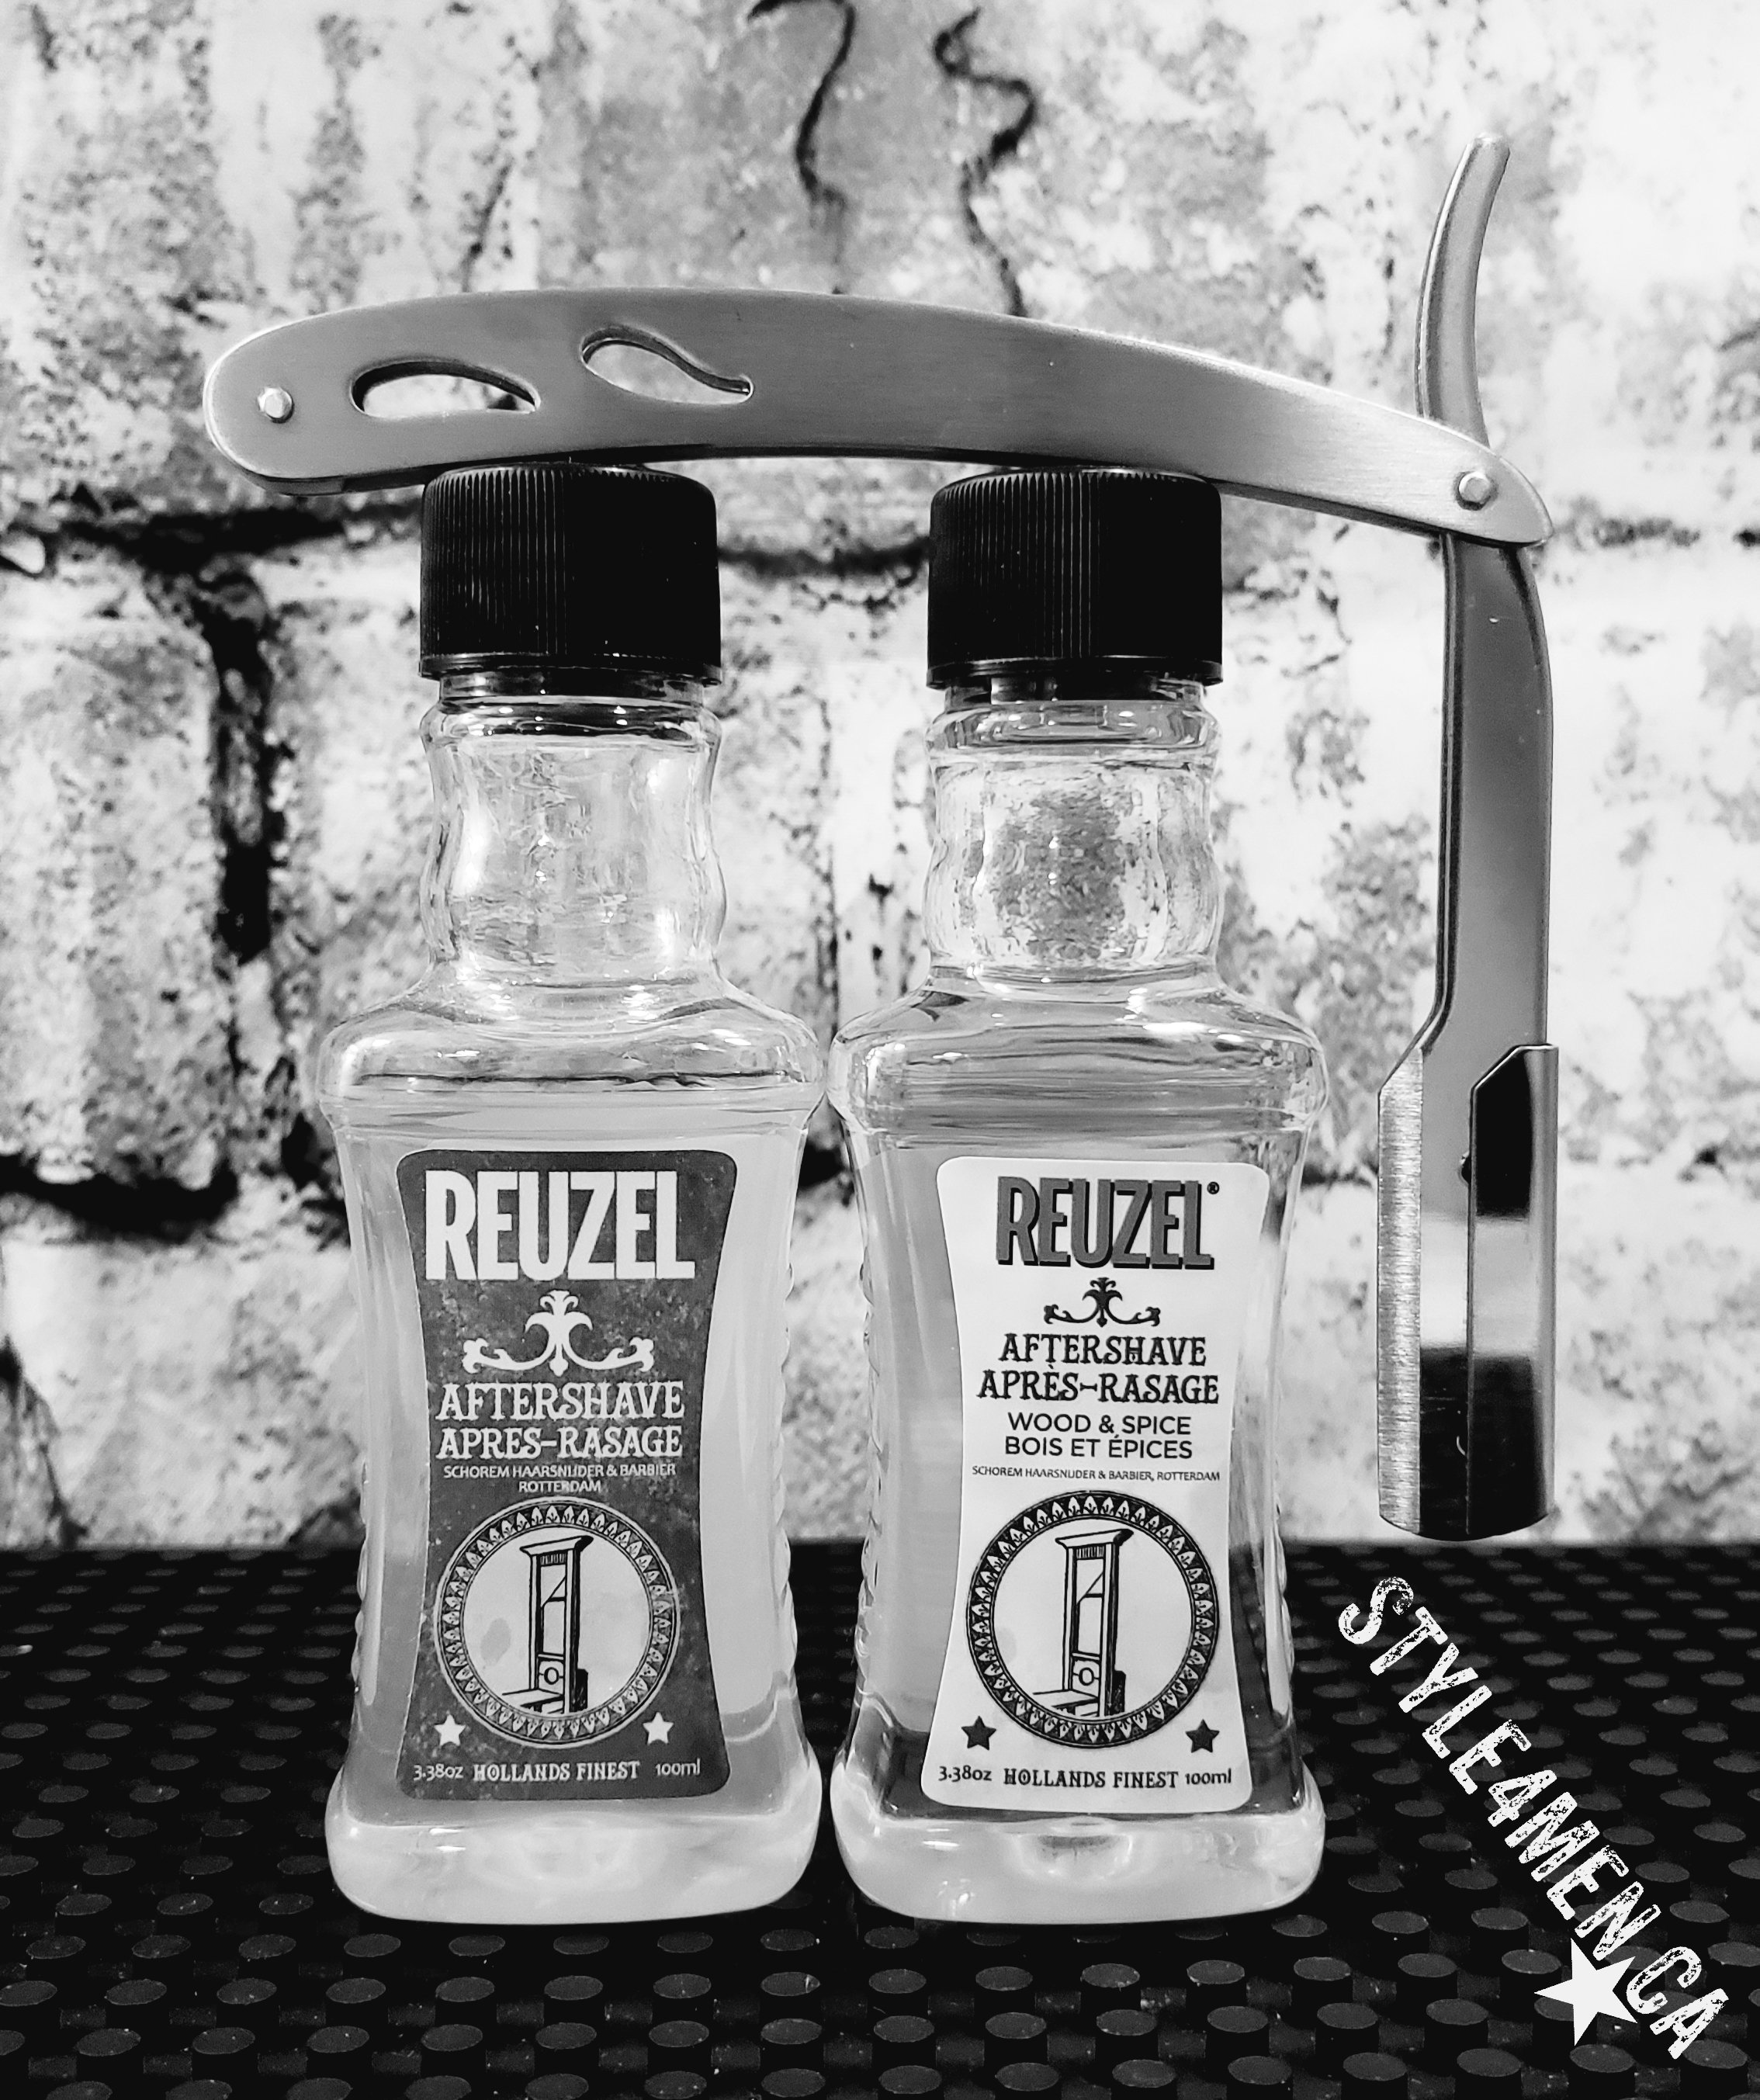 REUZEL aftershaves